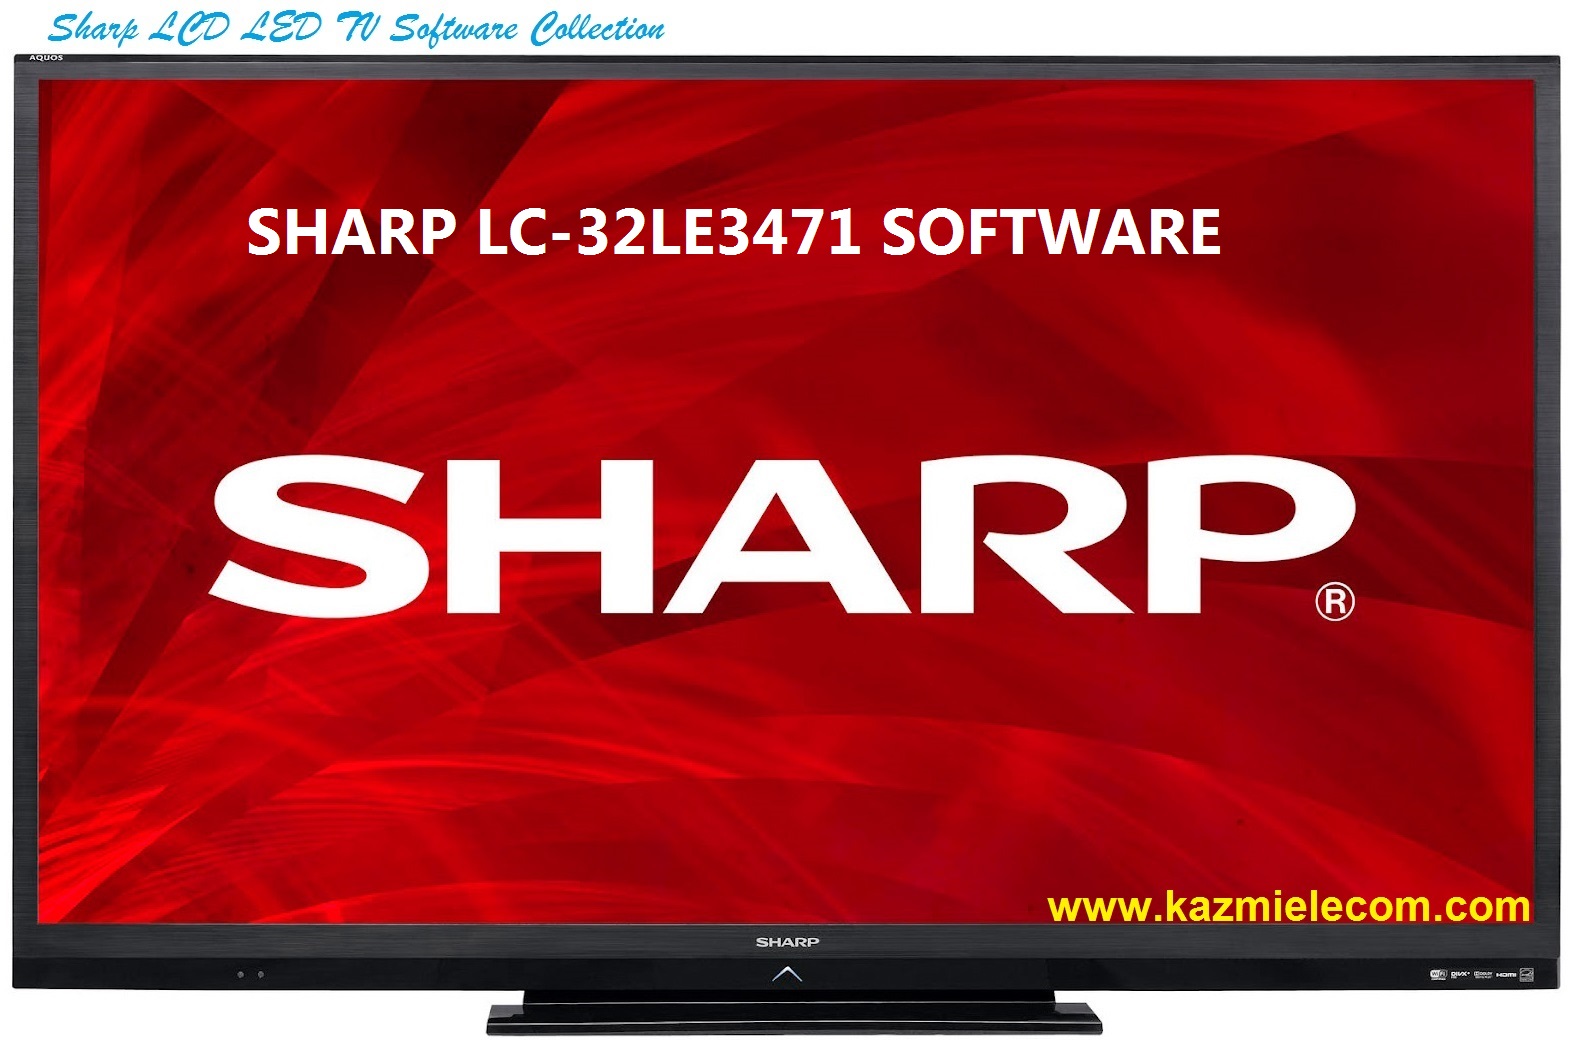 Sharp Lc-32Le3471